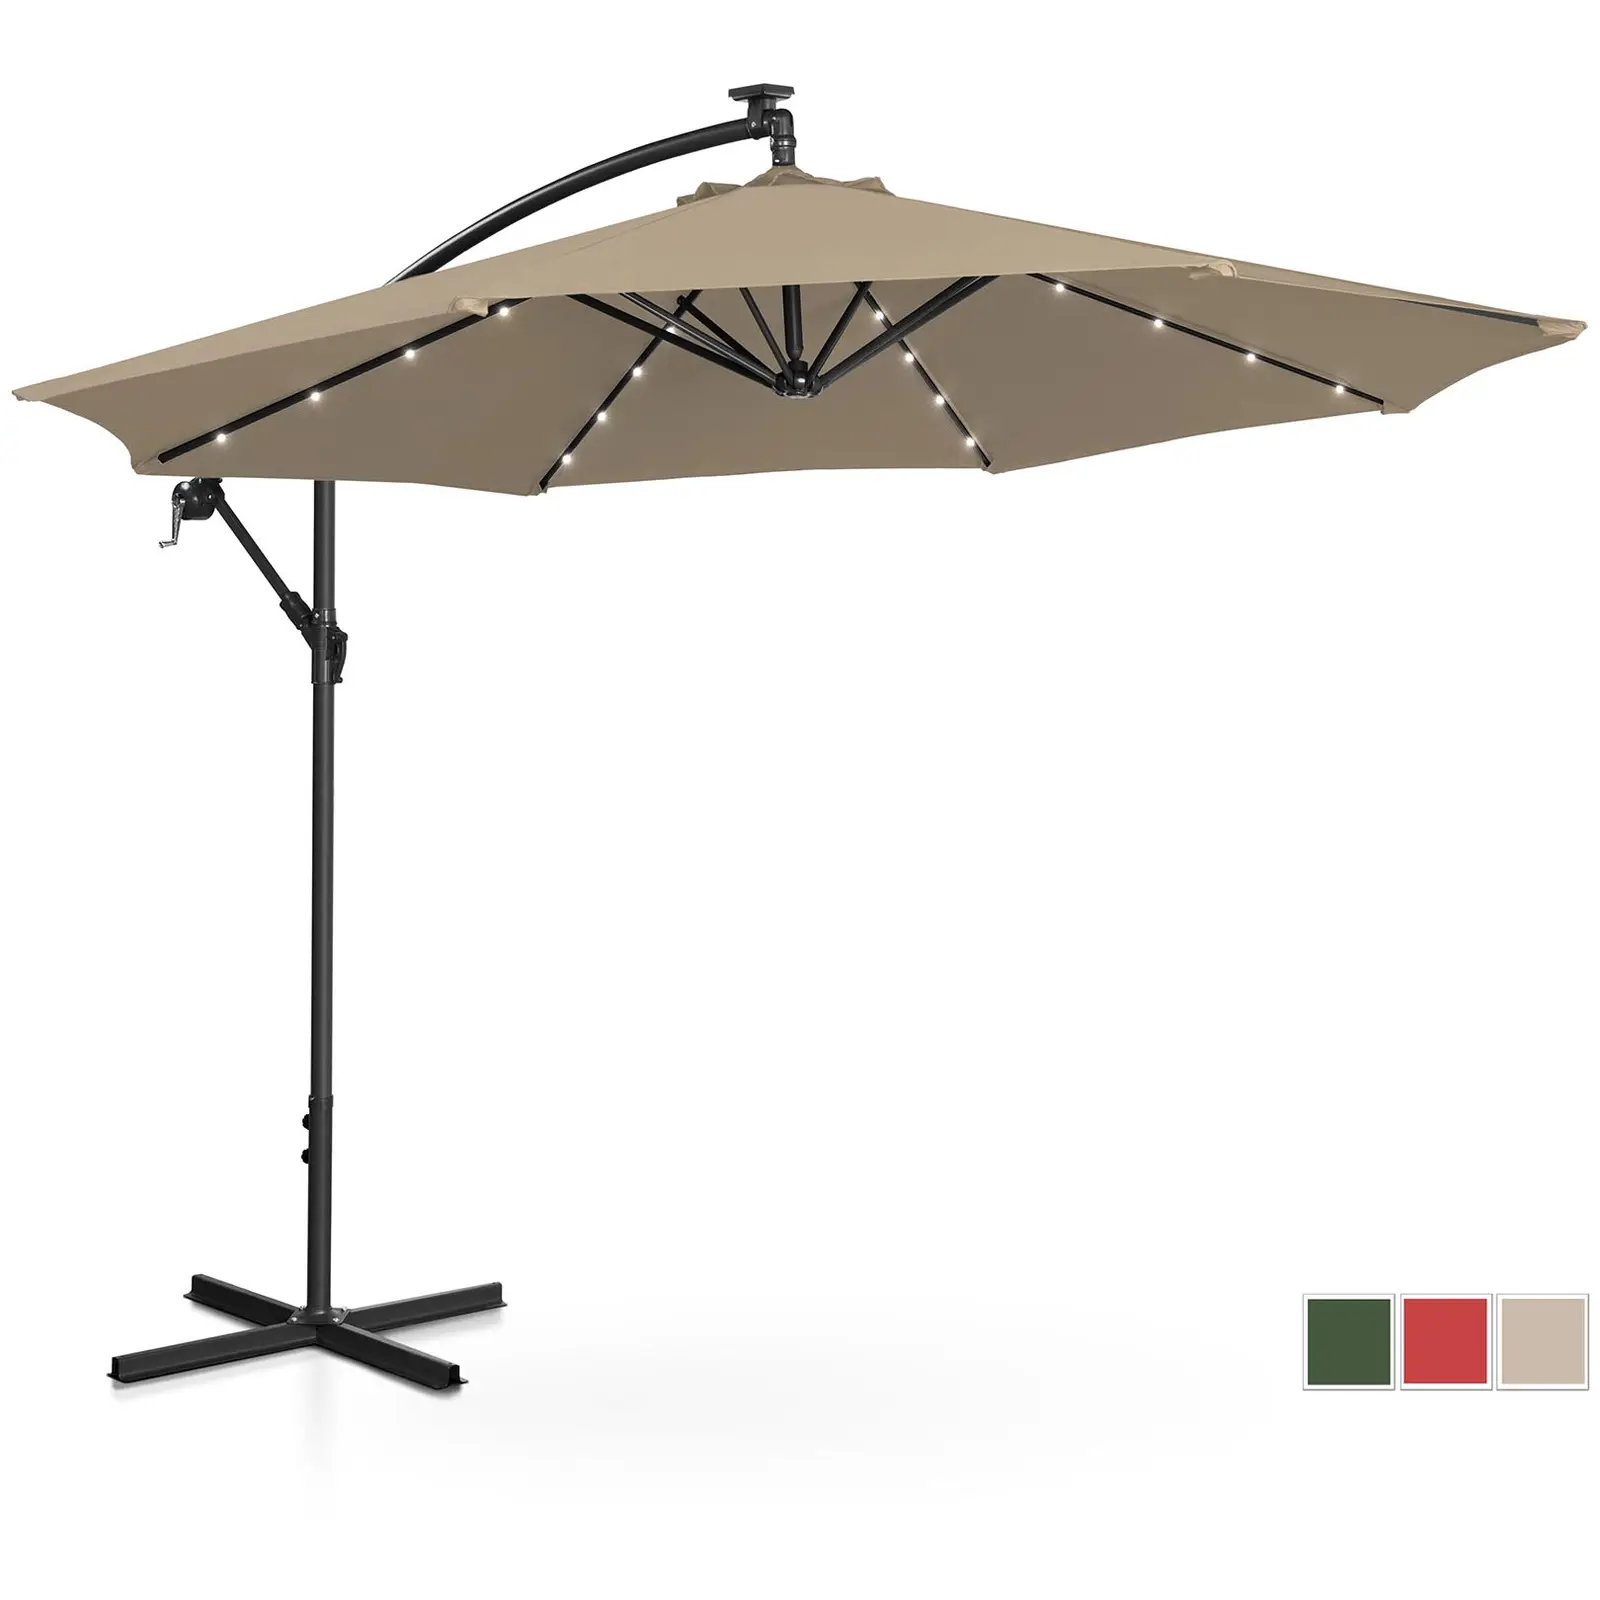 Garden umbrella - with lights - taupe - round - Ø 300 cm - tiltable